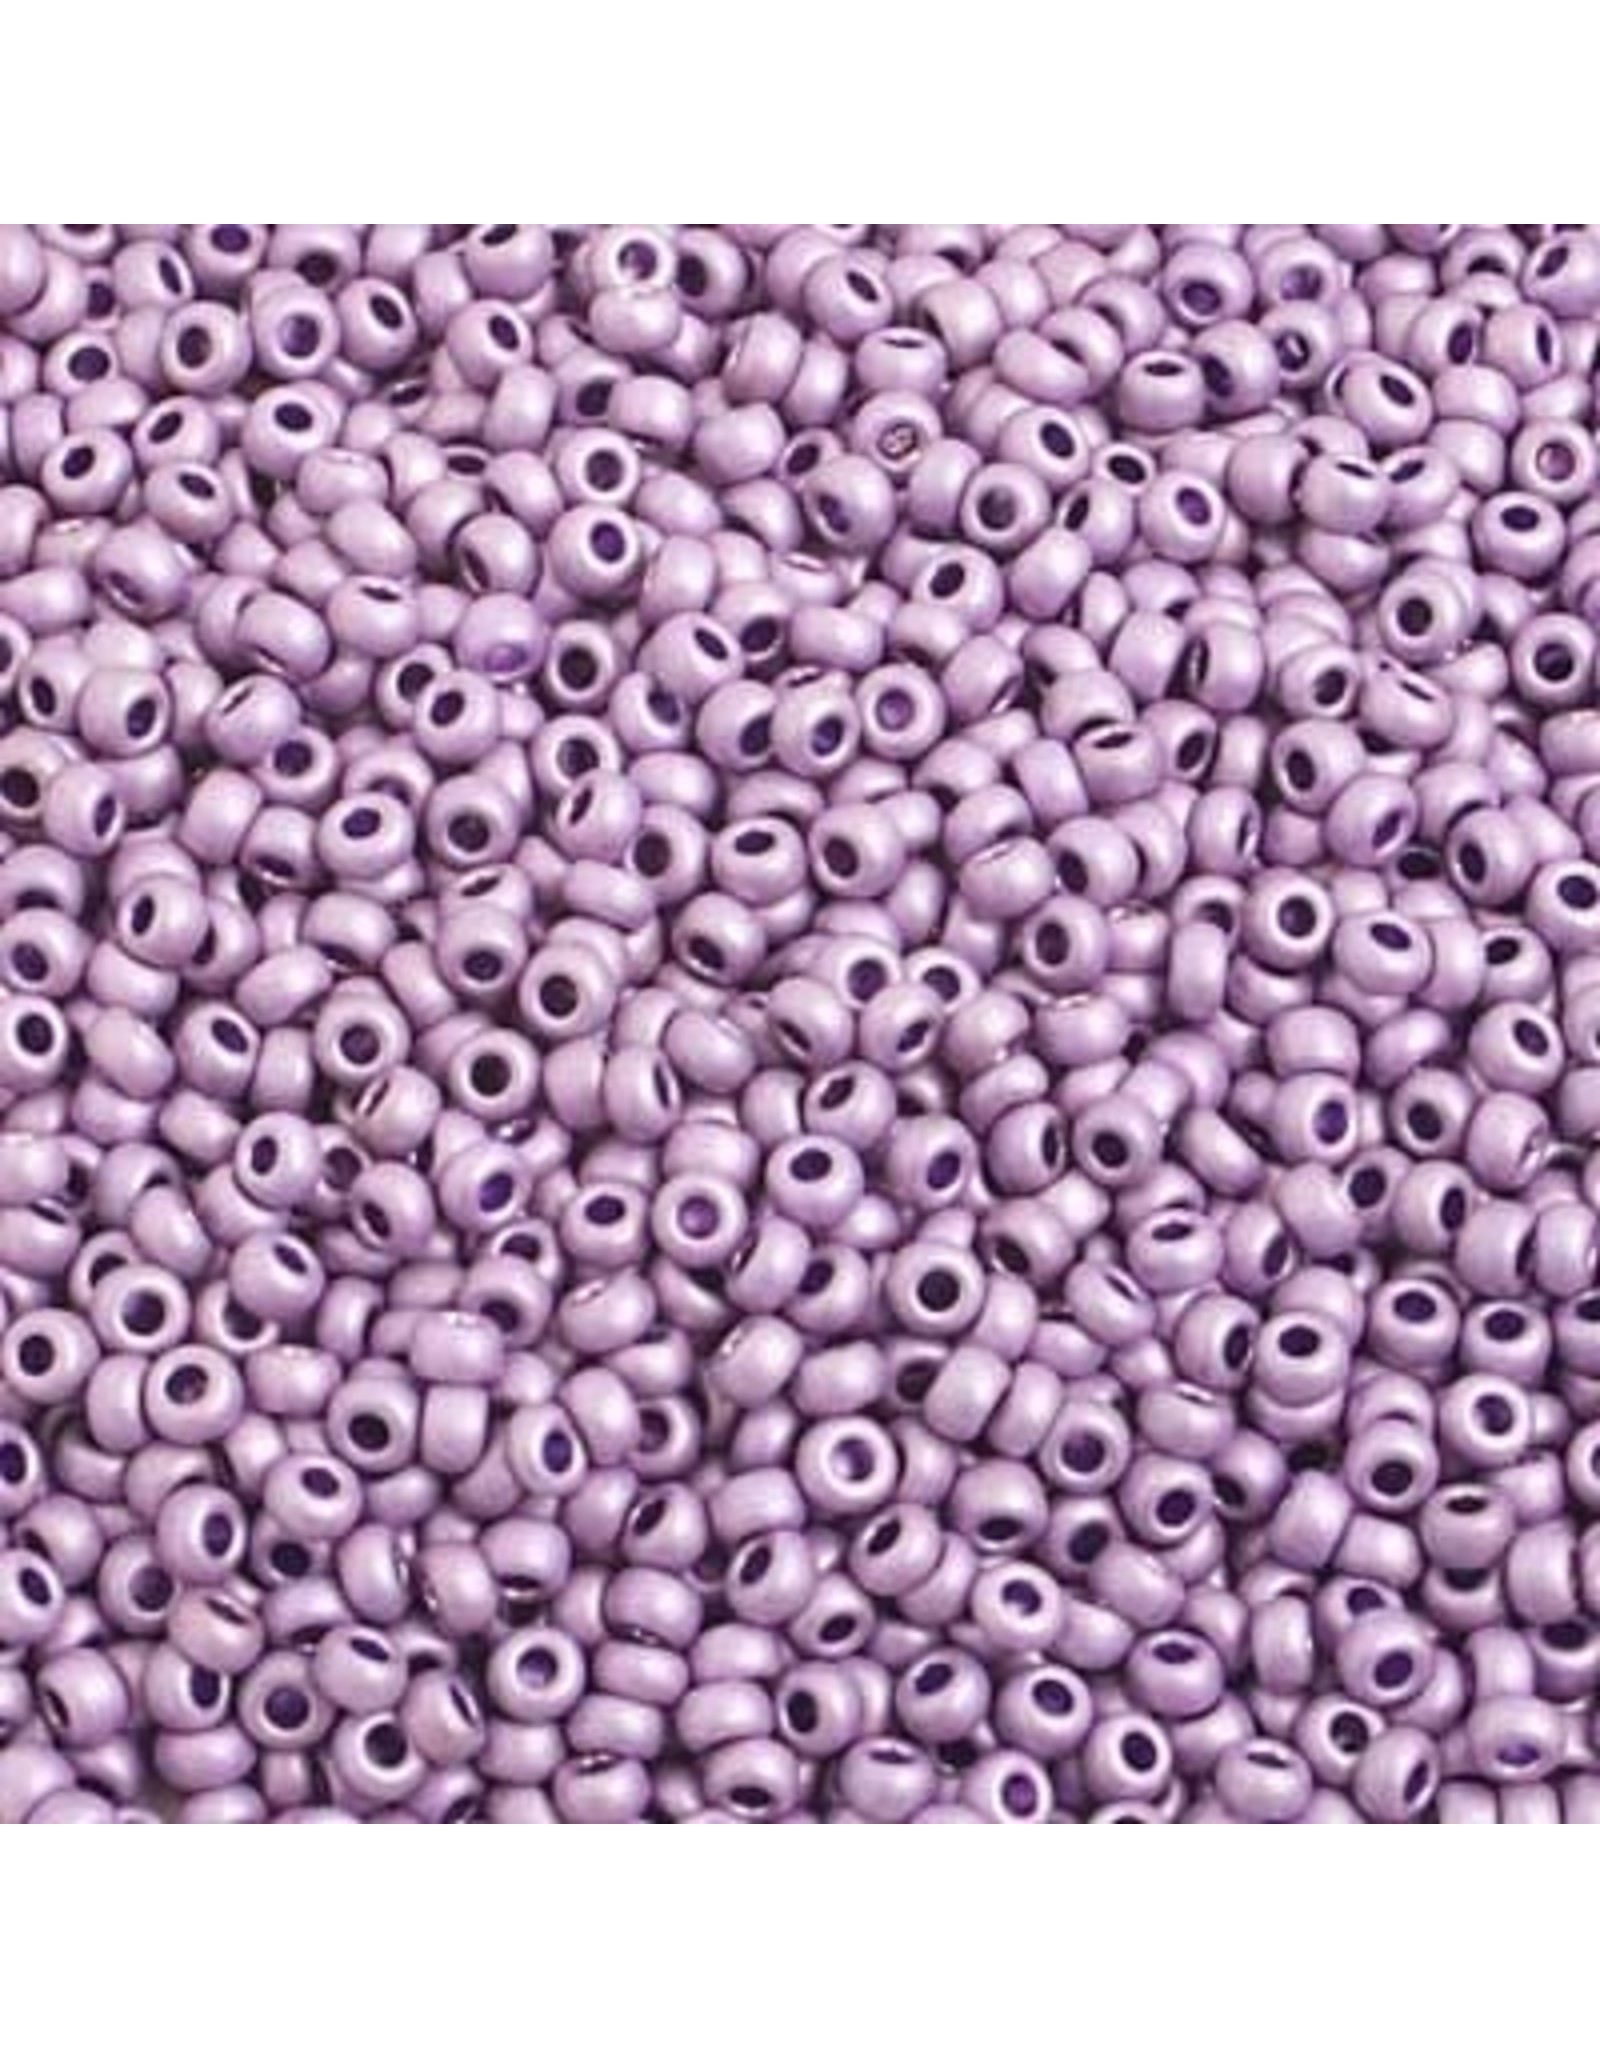 Czech *42015 10   Seed 10g Mauve Purple Metallic Matte Terra